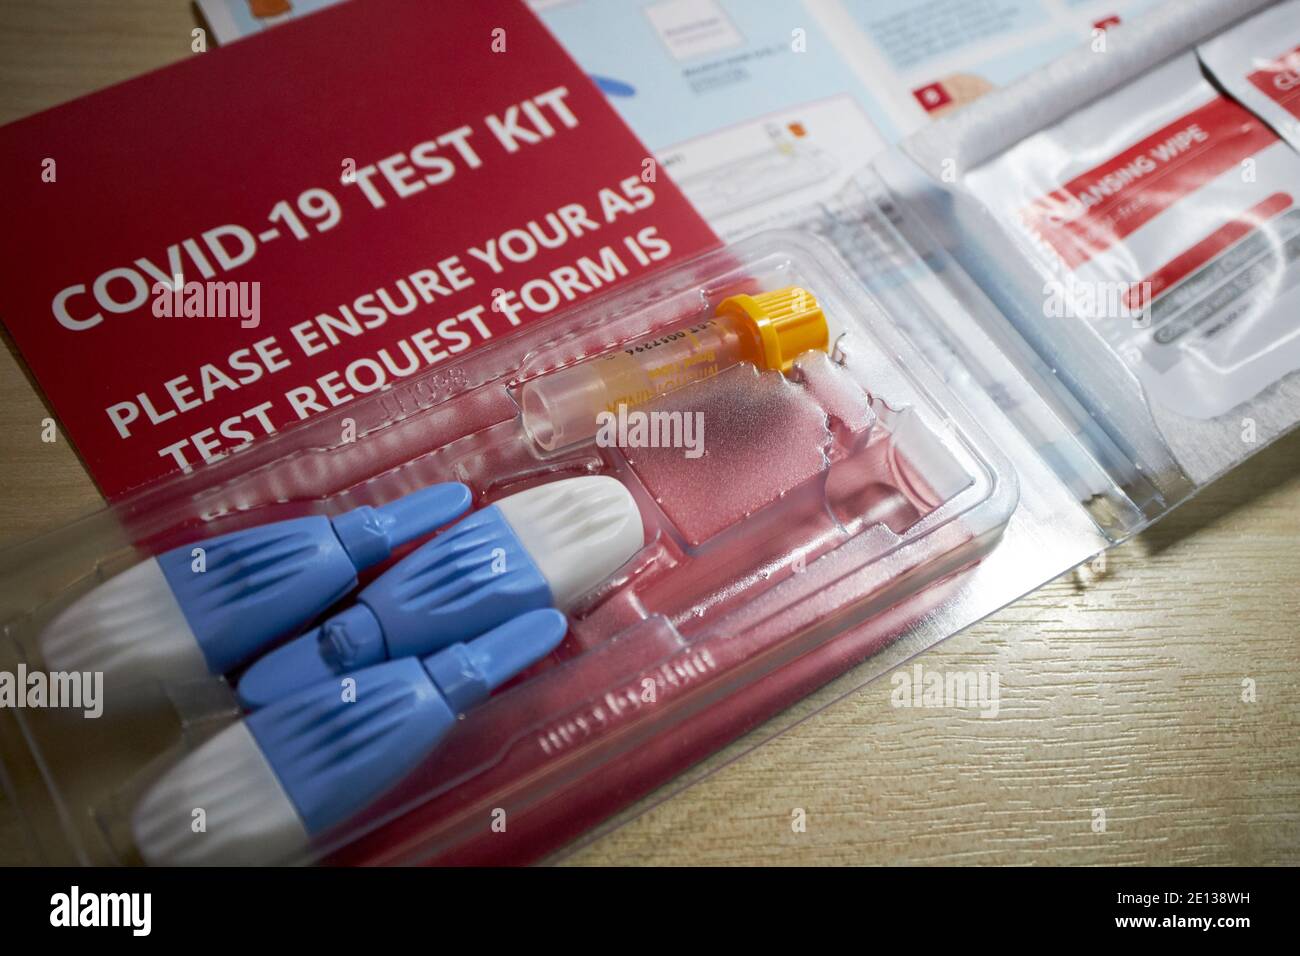 kit de test sanguin d'anticorps covid-19 publié dans le commerce pour les tests à domicile pour les anticorps du coronavirus avec instructions reçues au royaume-uni Banque D'Images